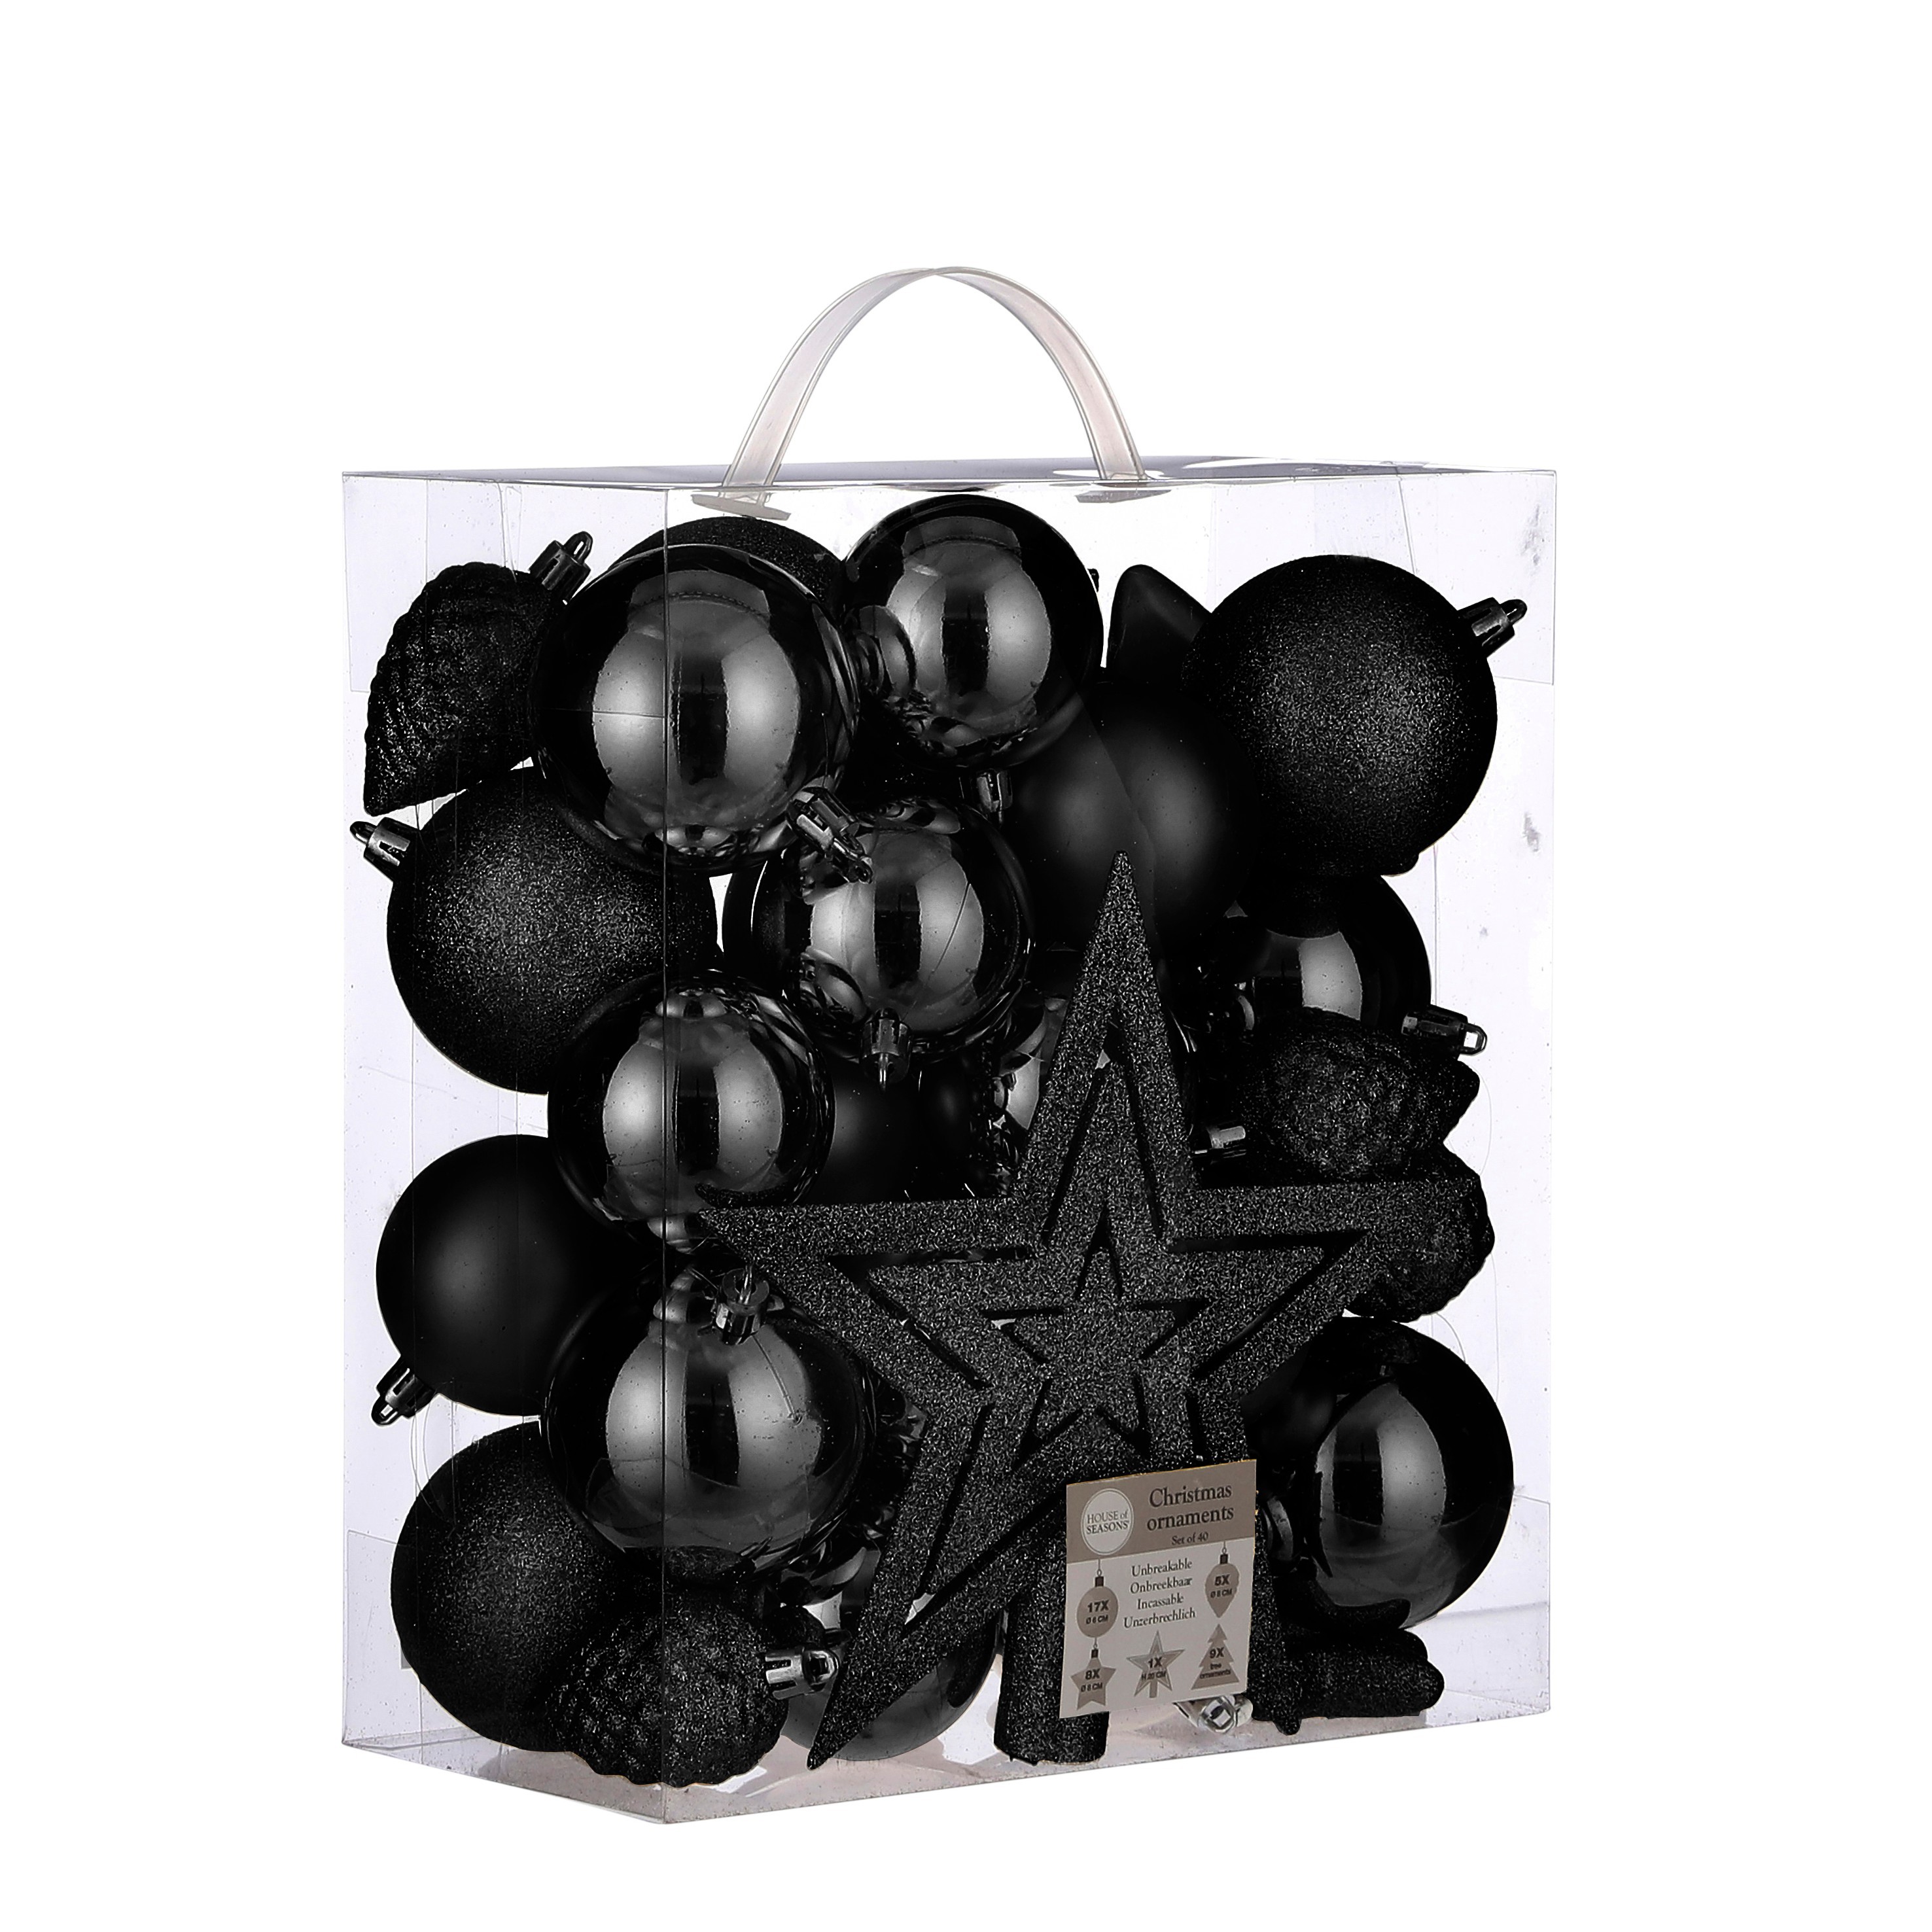 House of seasons - boules de noël en plastique noir - 40 pièces